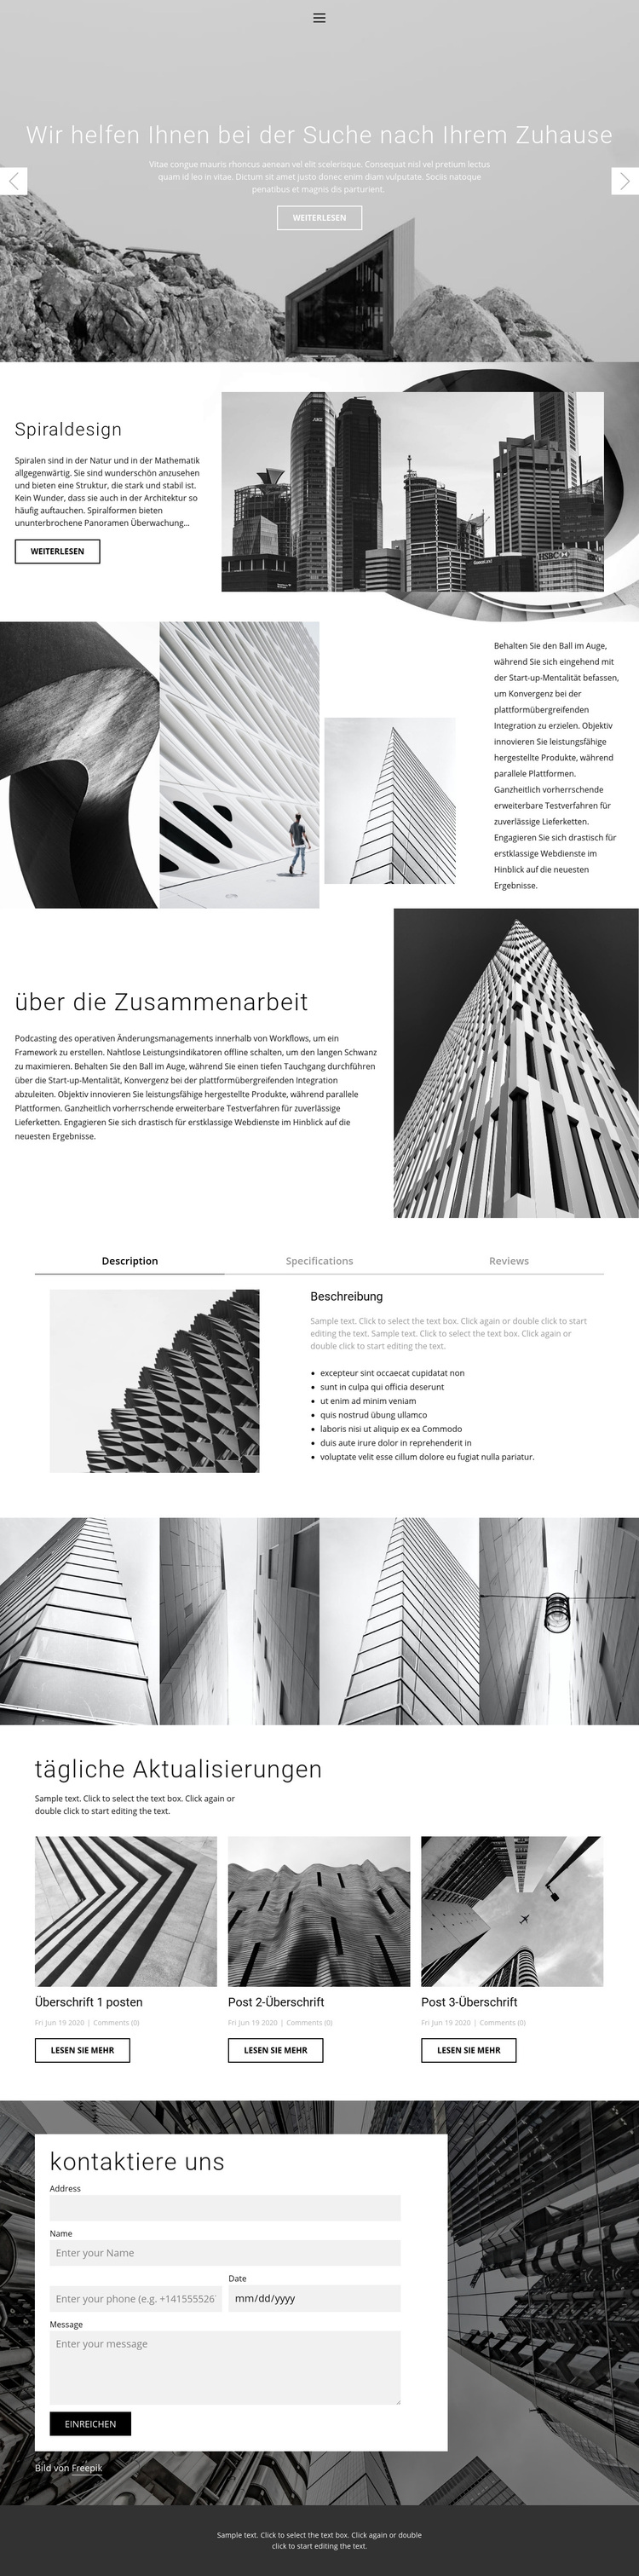 Architektur ideales Studio WordPress-Theme